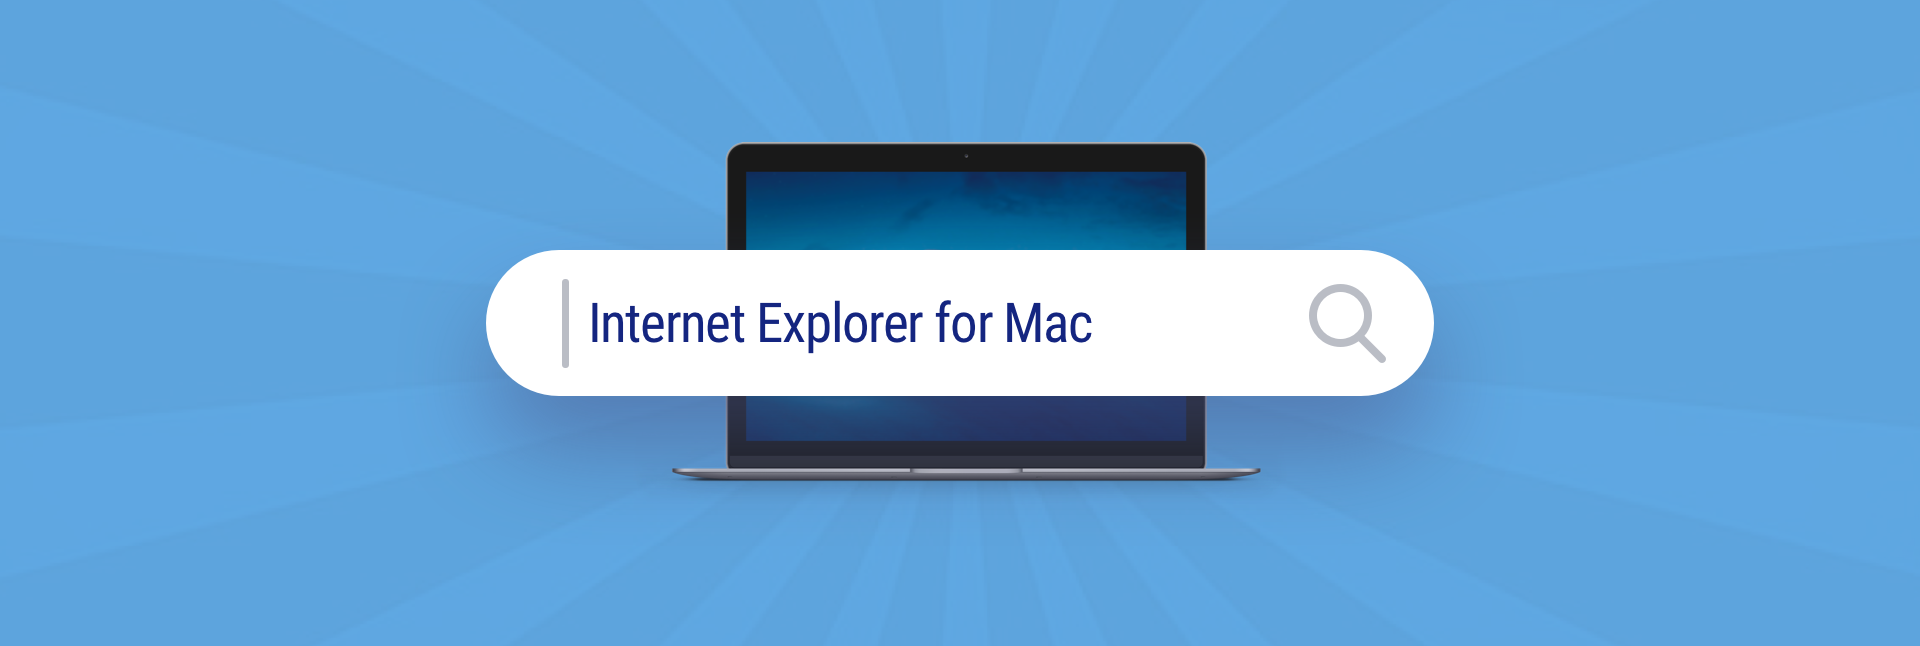 internet explorer 8 for mac download